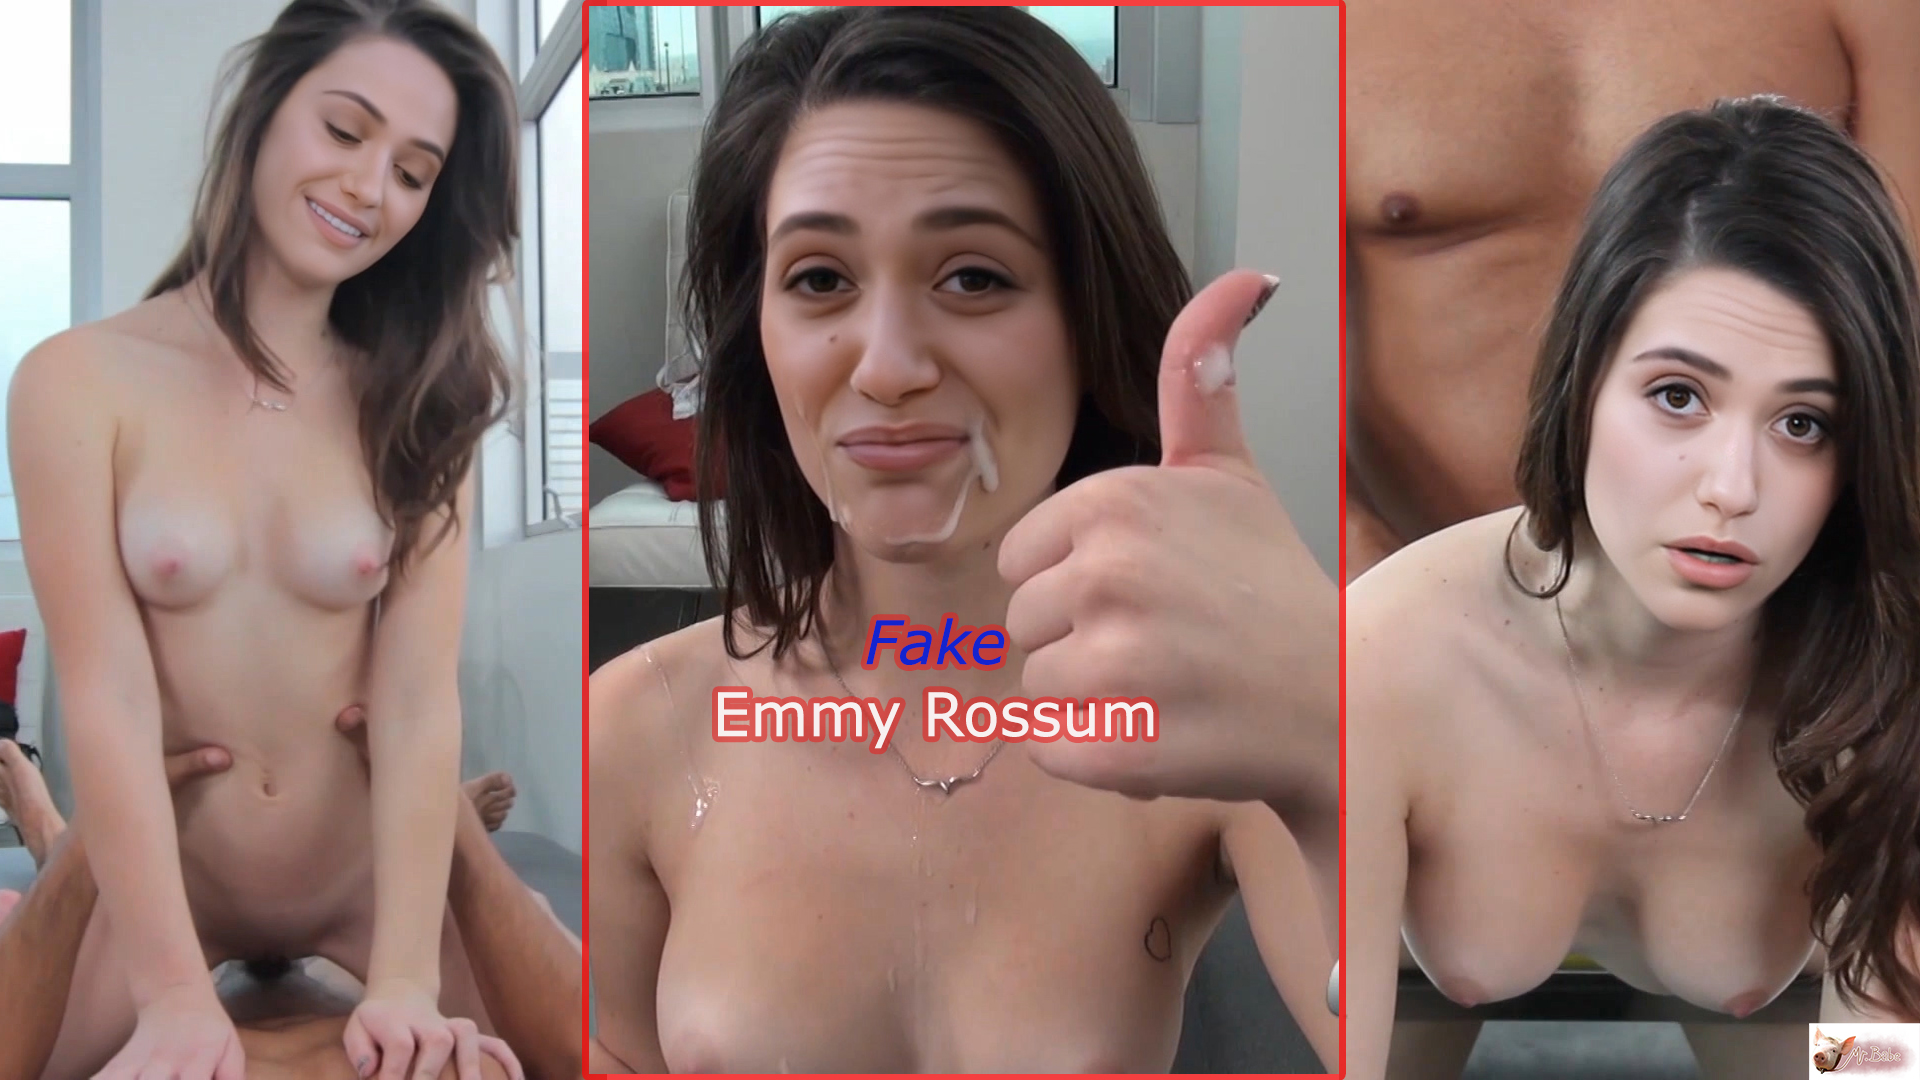 Fake Emmy Rossum (trailer) -3- DeepFake Porn - MrDeepFakes